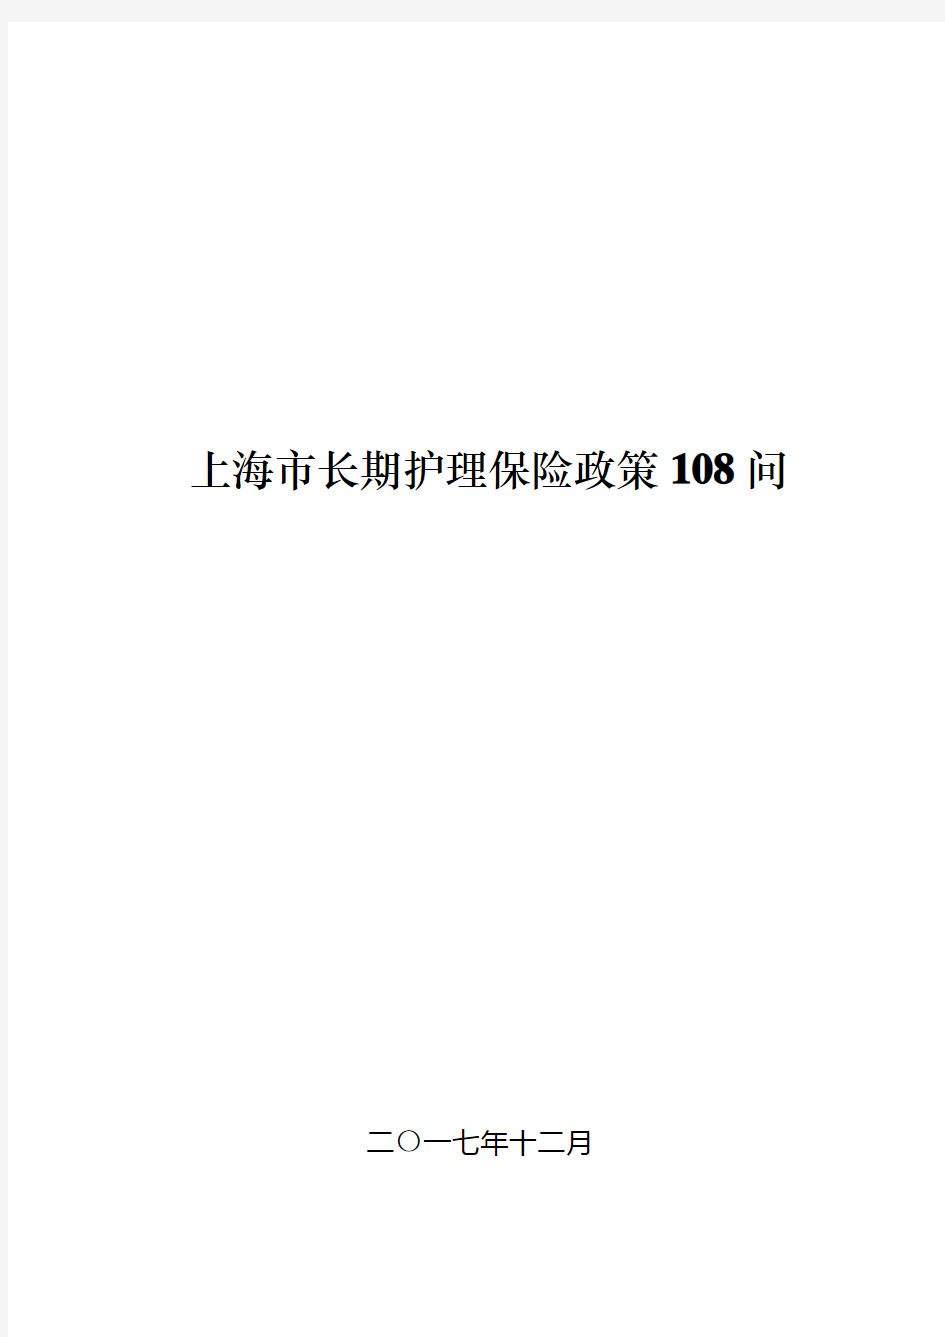 上海长期护理保险政策108问